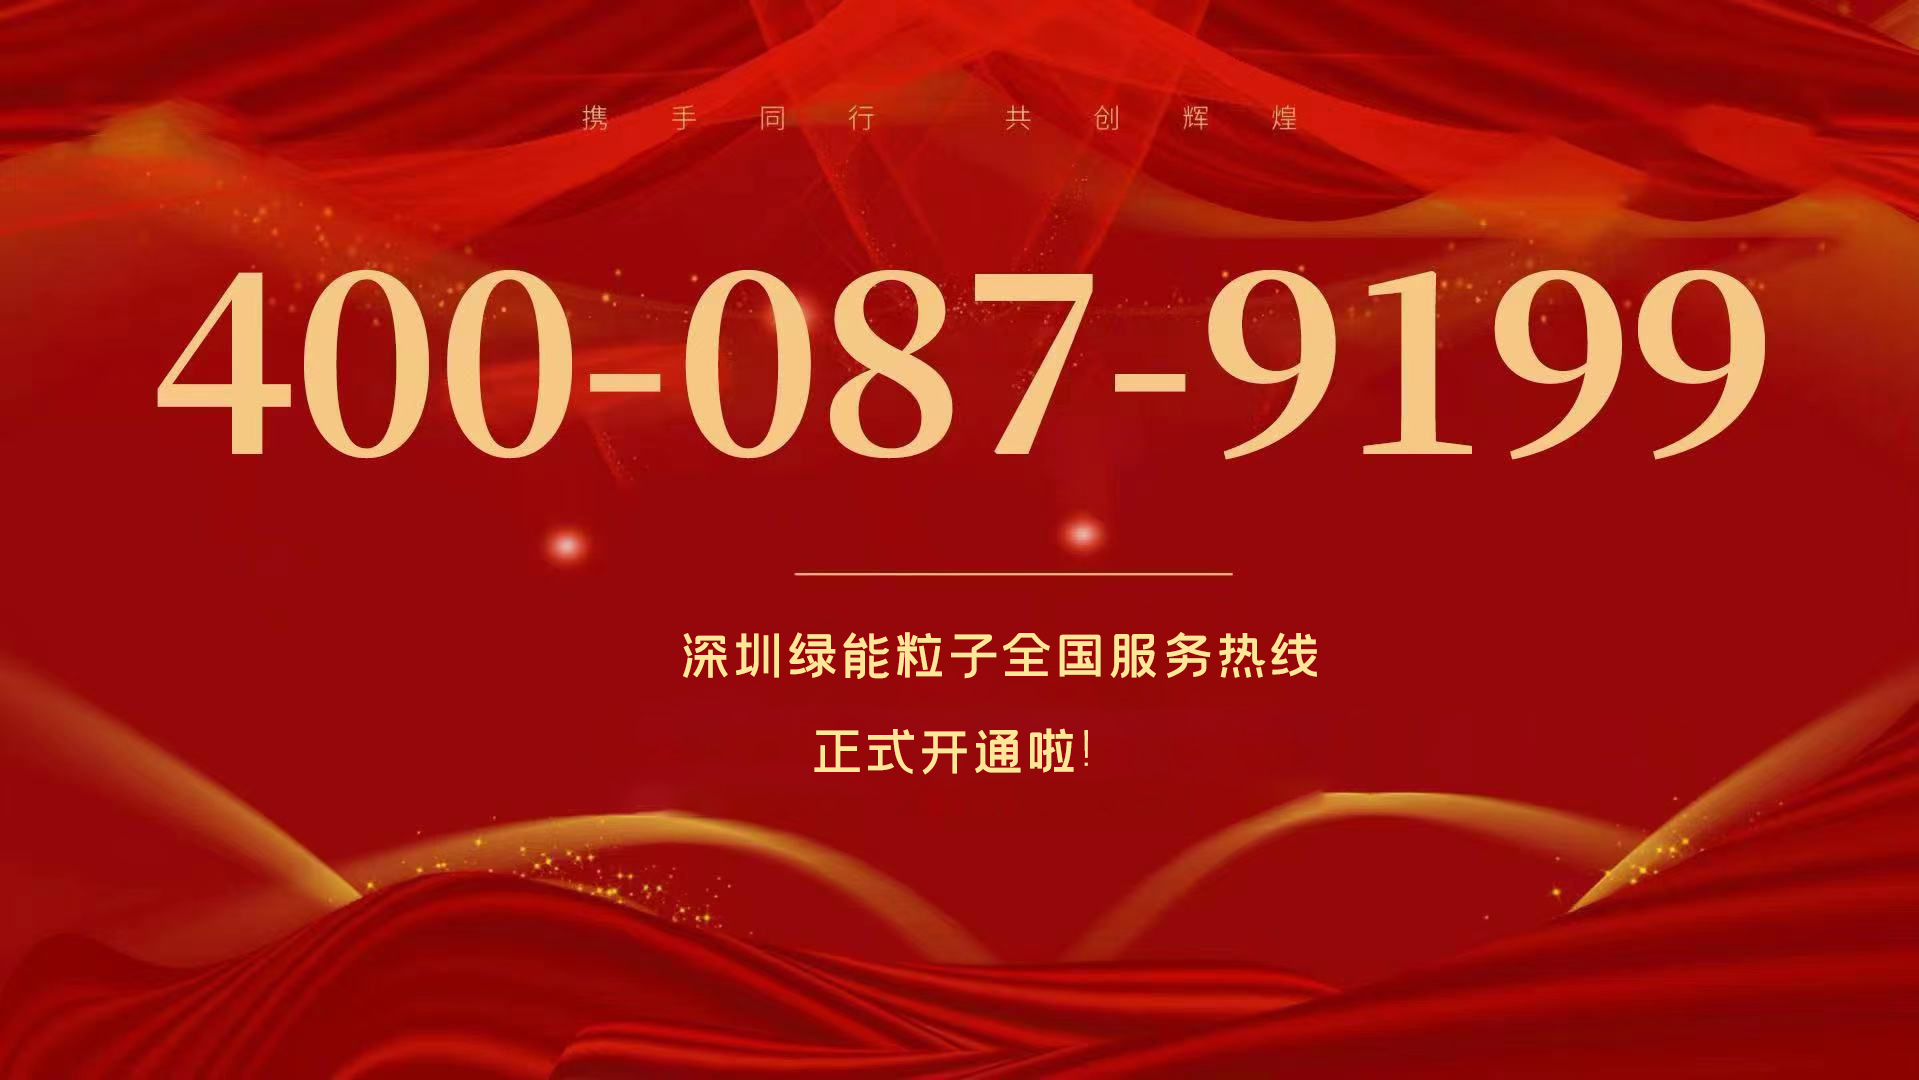 深圳欧洲杯正规下单平台全国效劳热线400-087-9199正式开通啦！